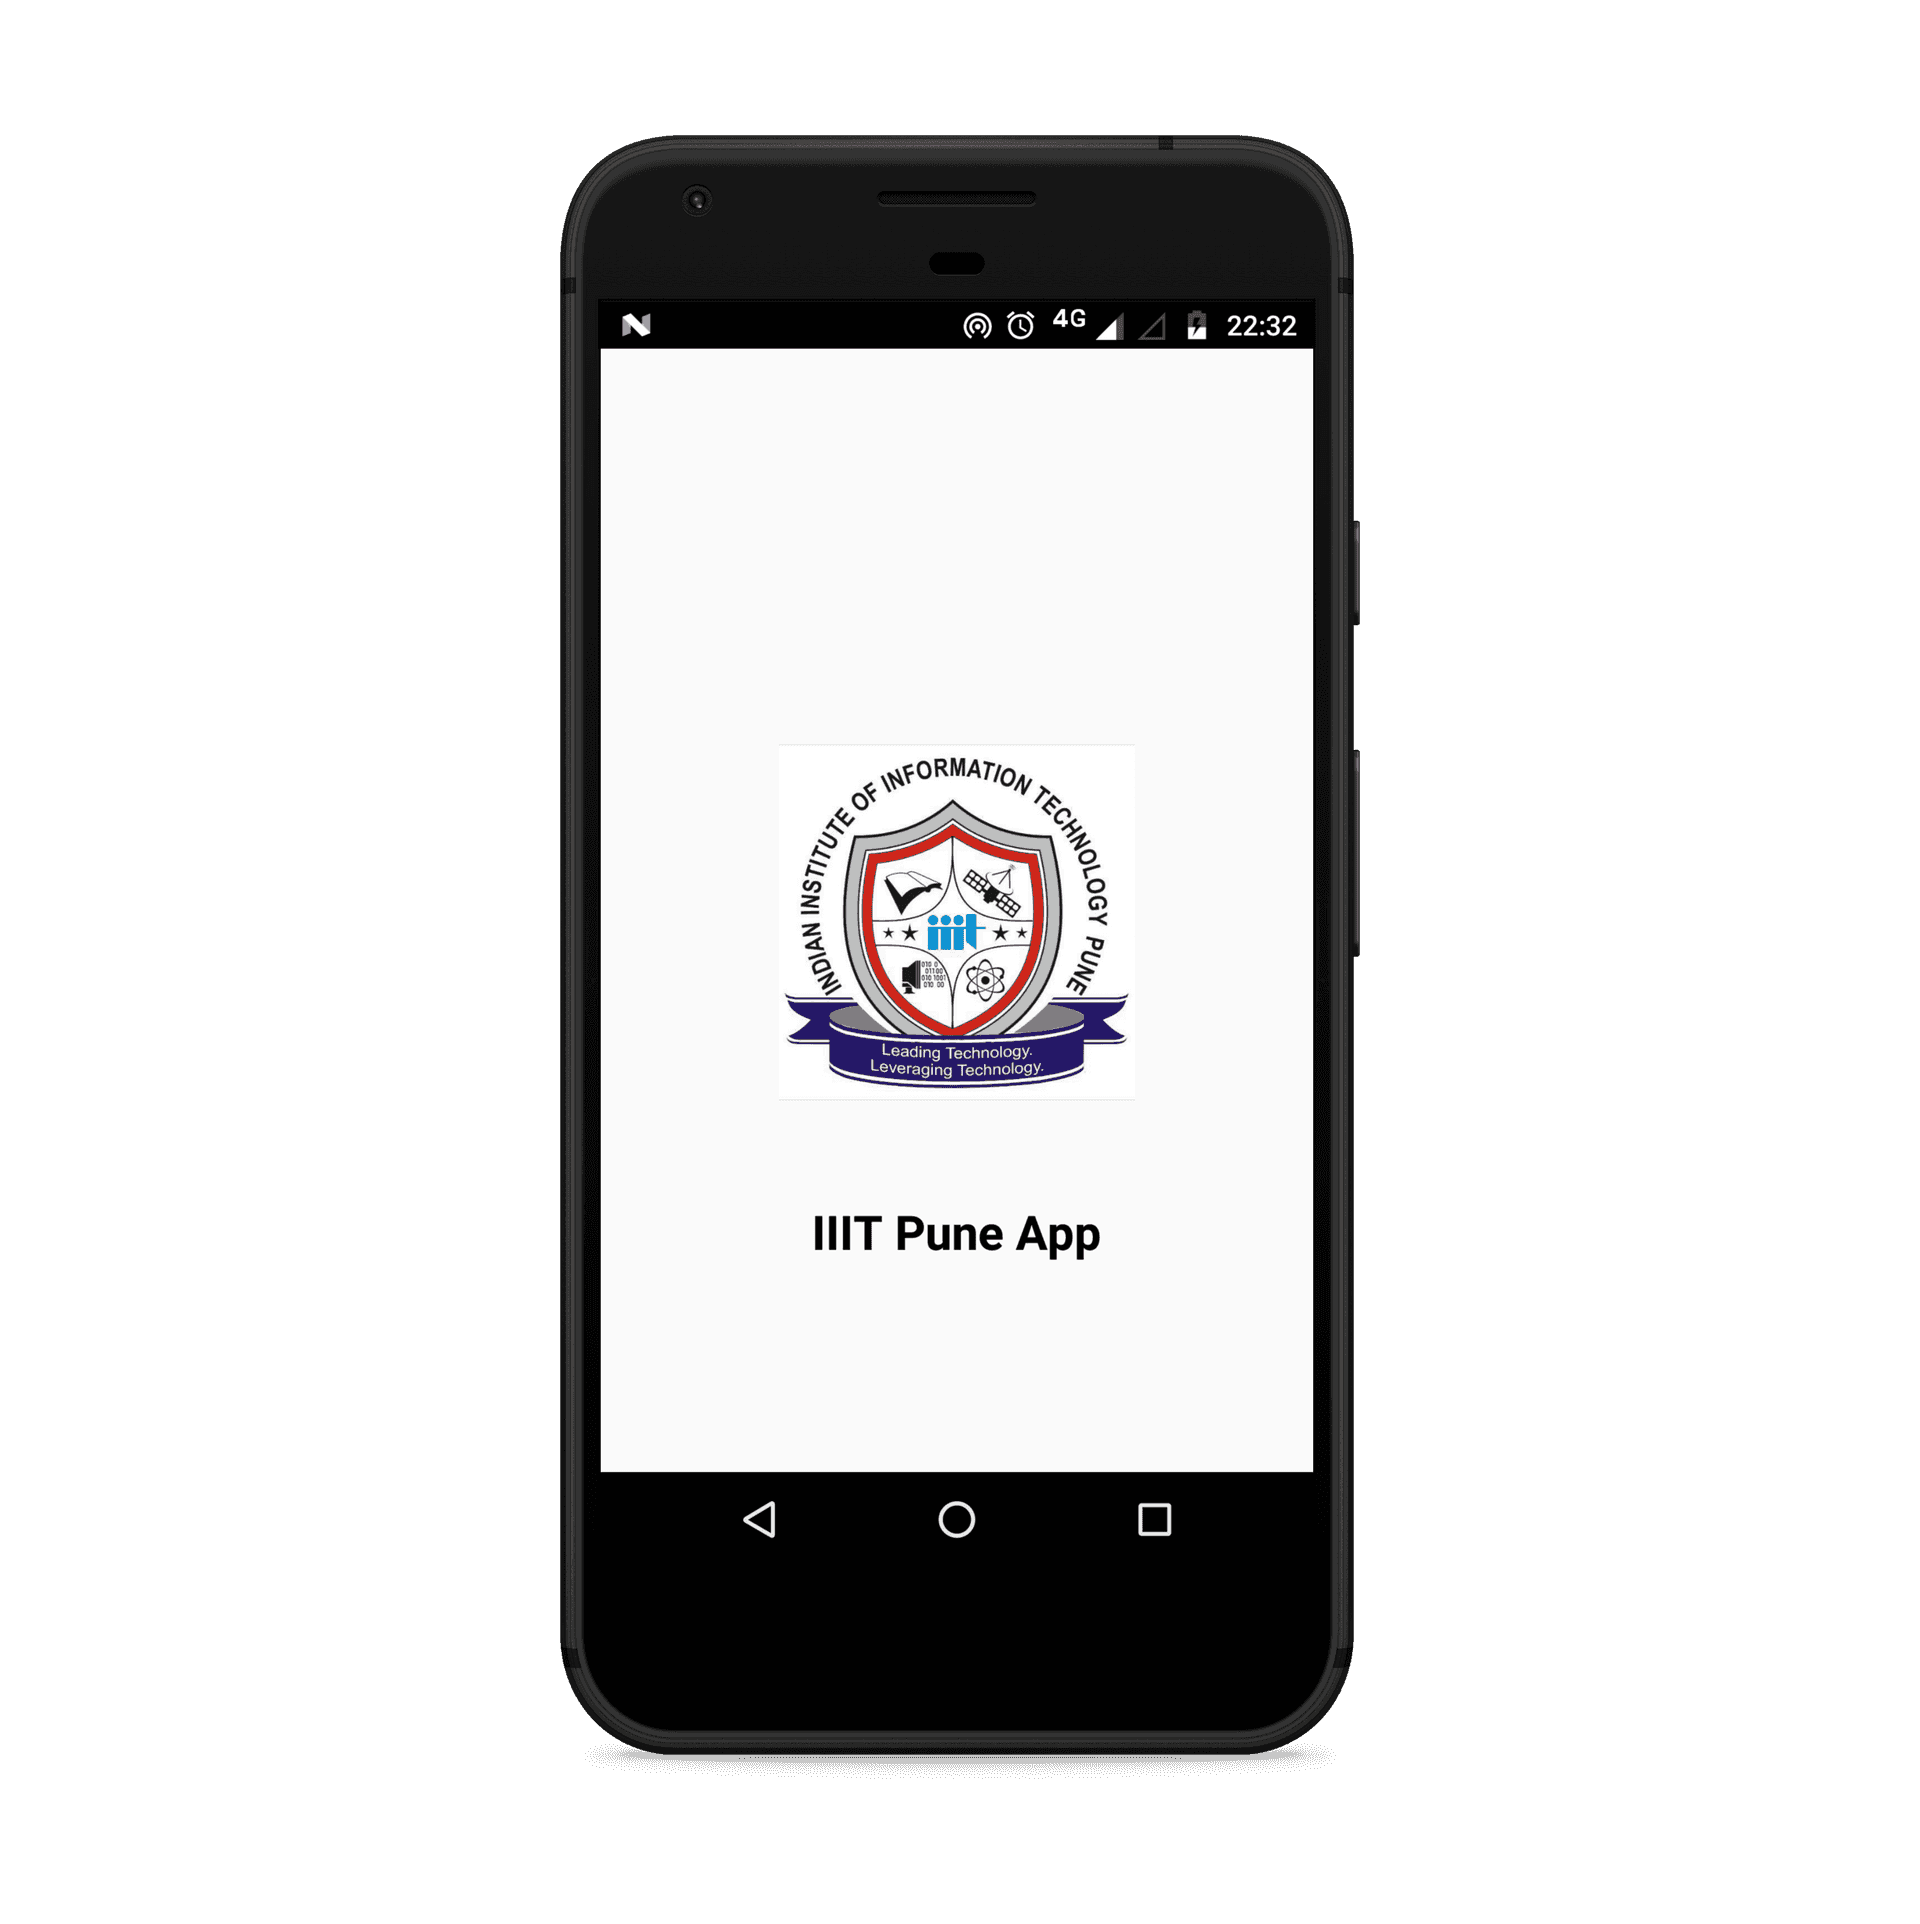 IIIT Pune App